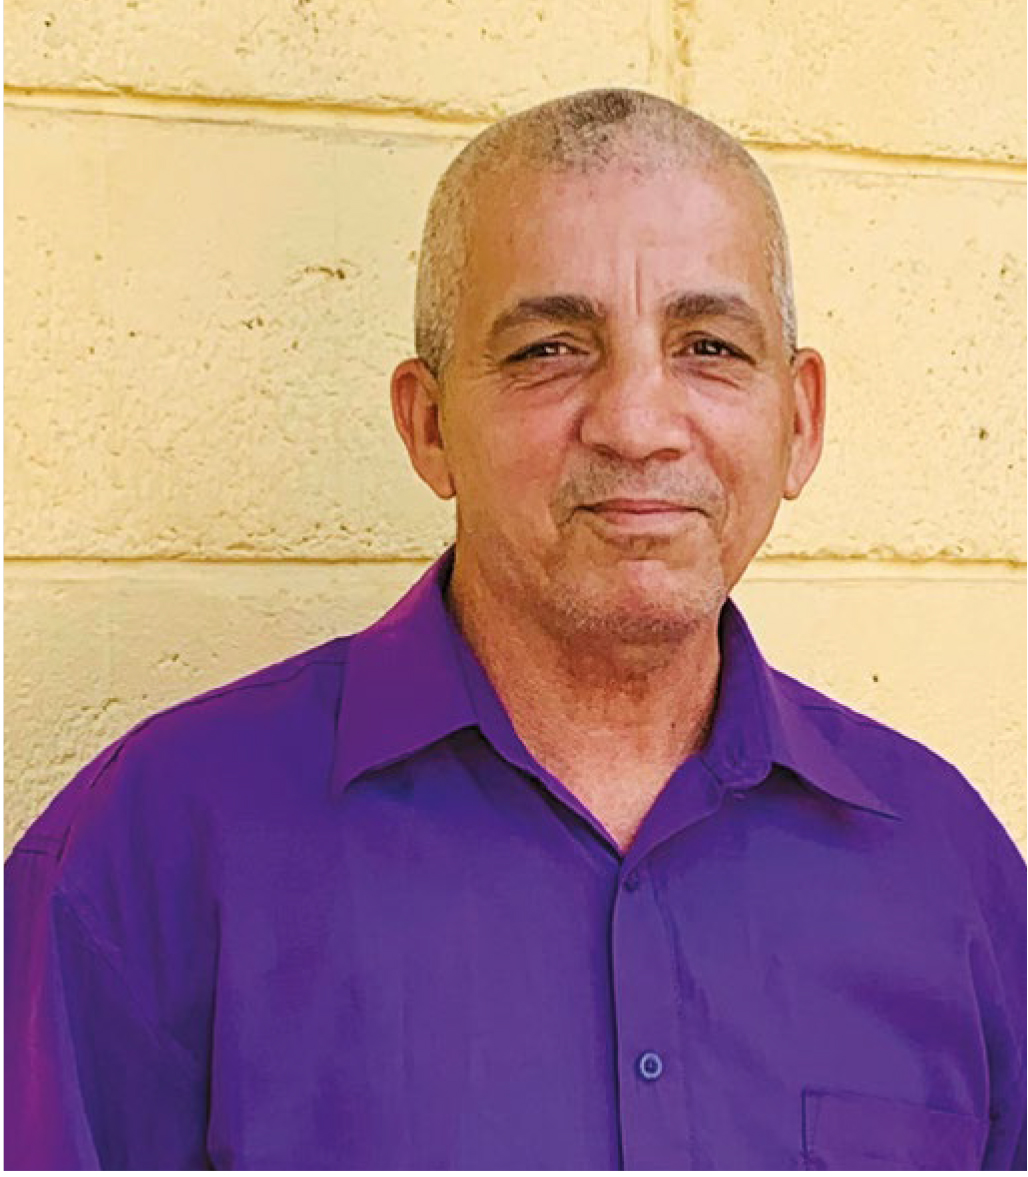 Manuel from Cuba